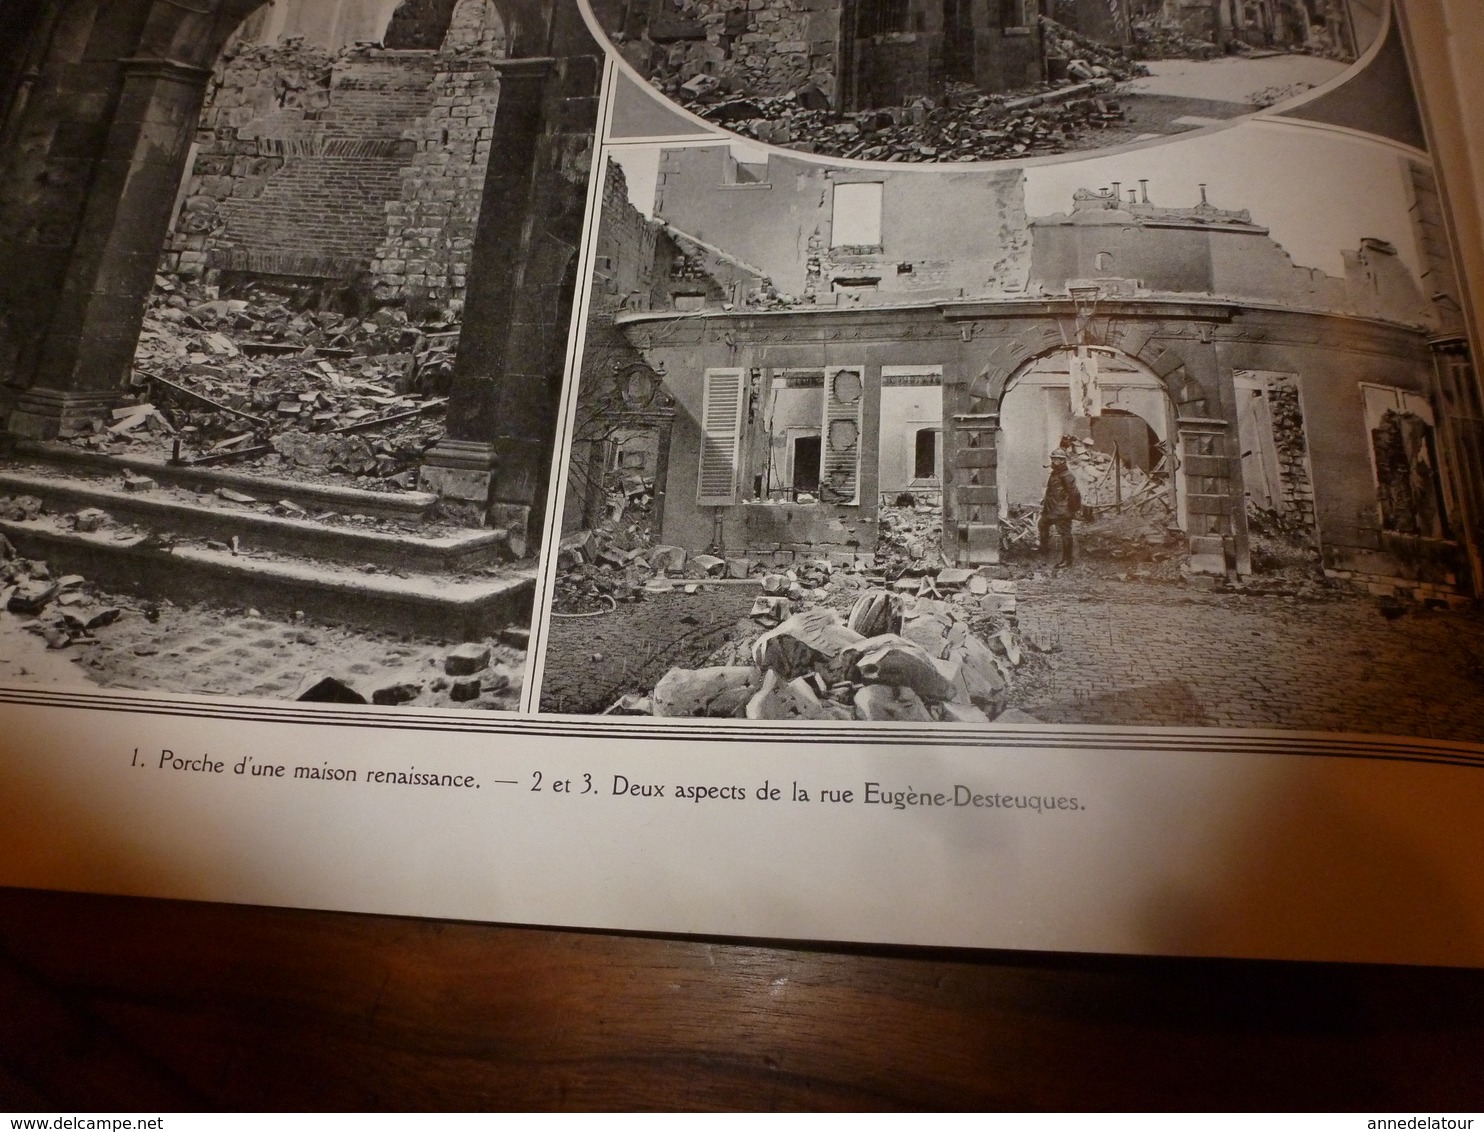 1914-1918 LA GUERRE:Reims,Soissons,Arras --->La dure vie dans les caves des villes bombardées;Vauxrot;St-Vaast; etc